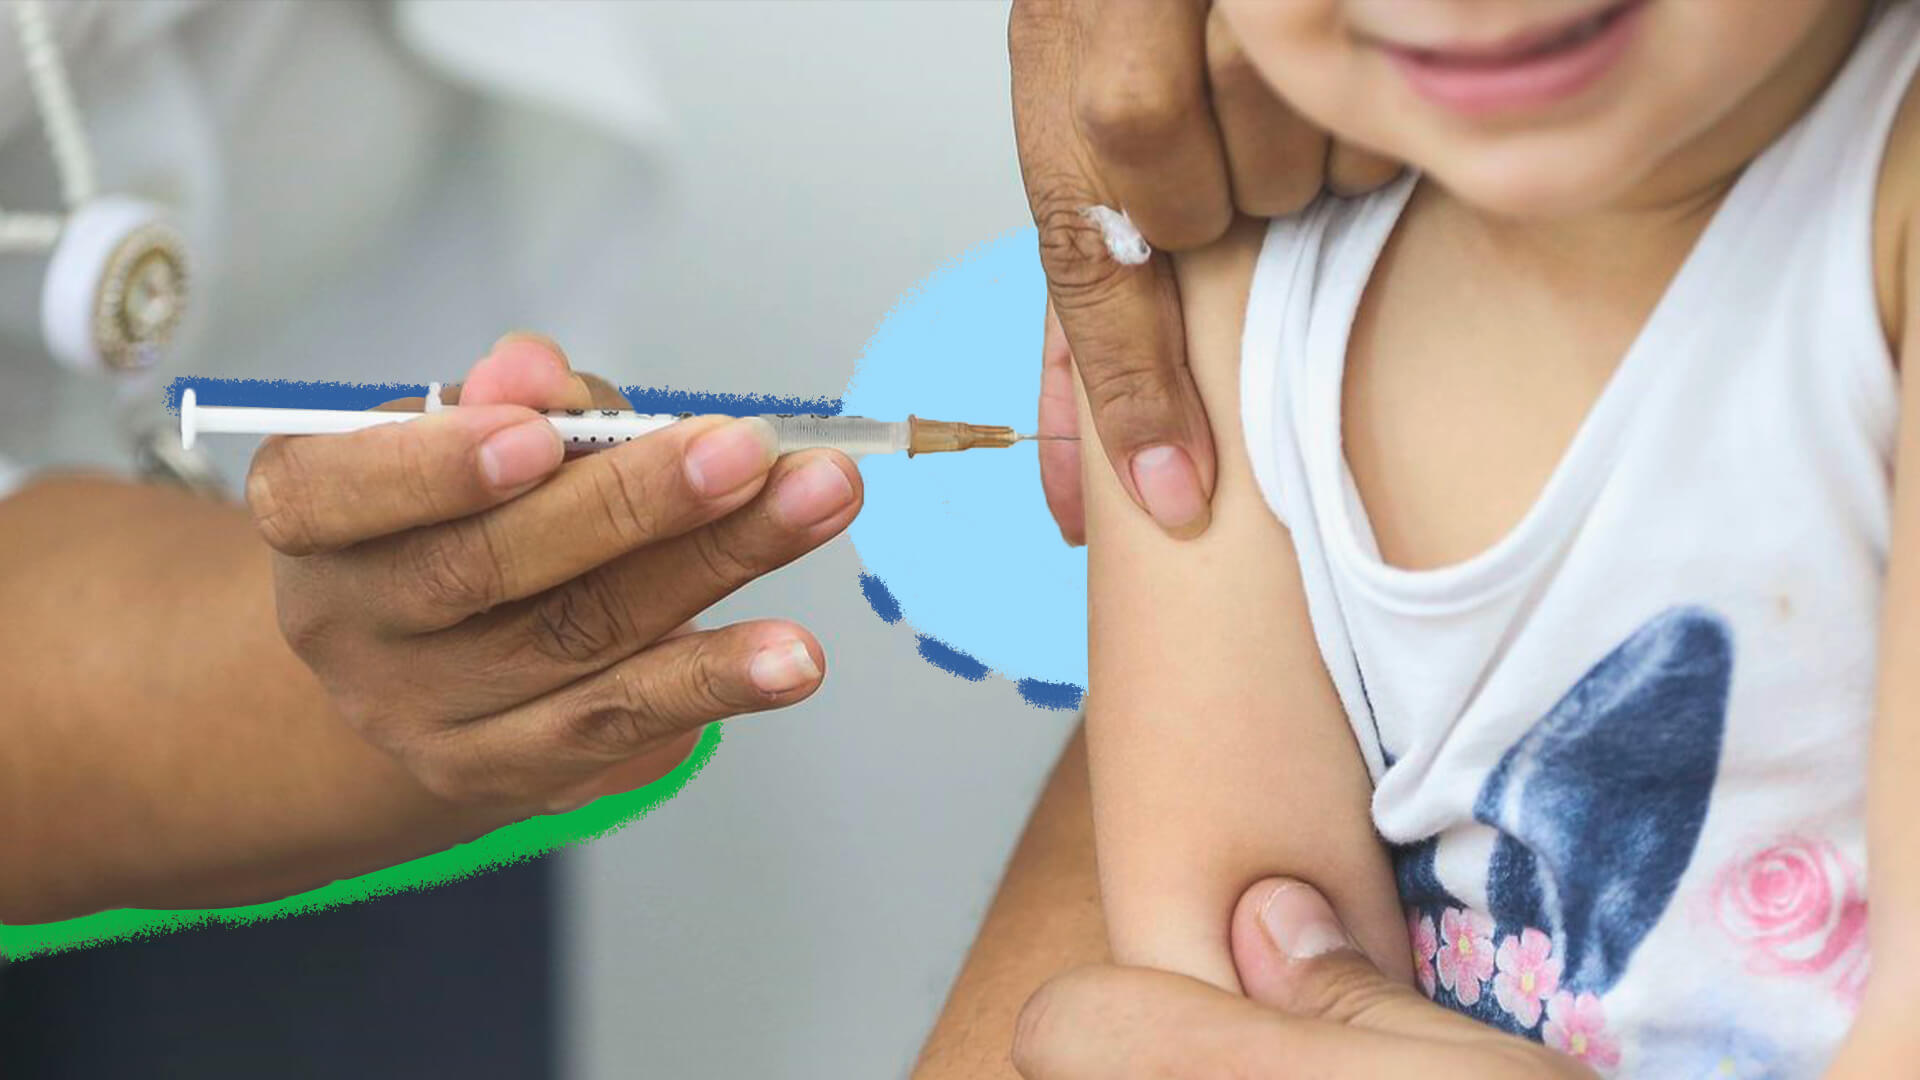 Vacina da dengue: o que precisamos saber sobre o novo imunizante?